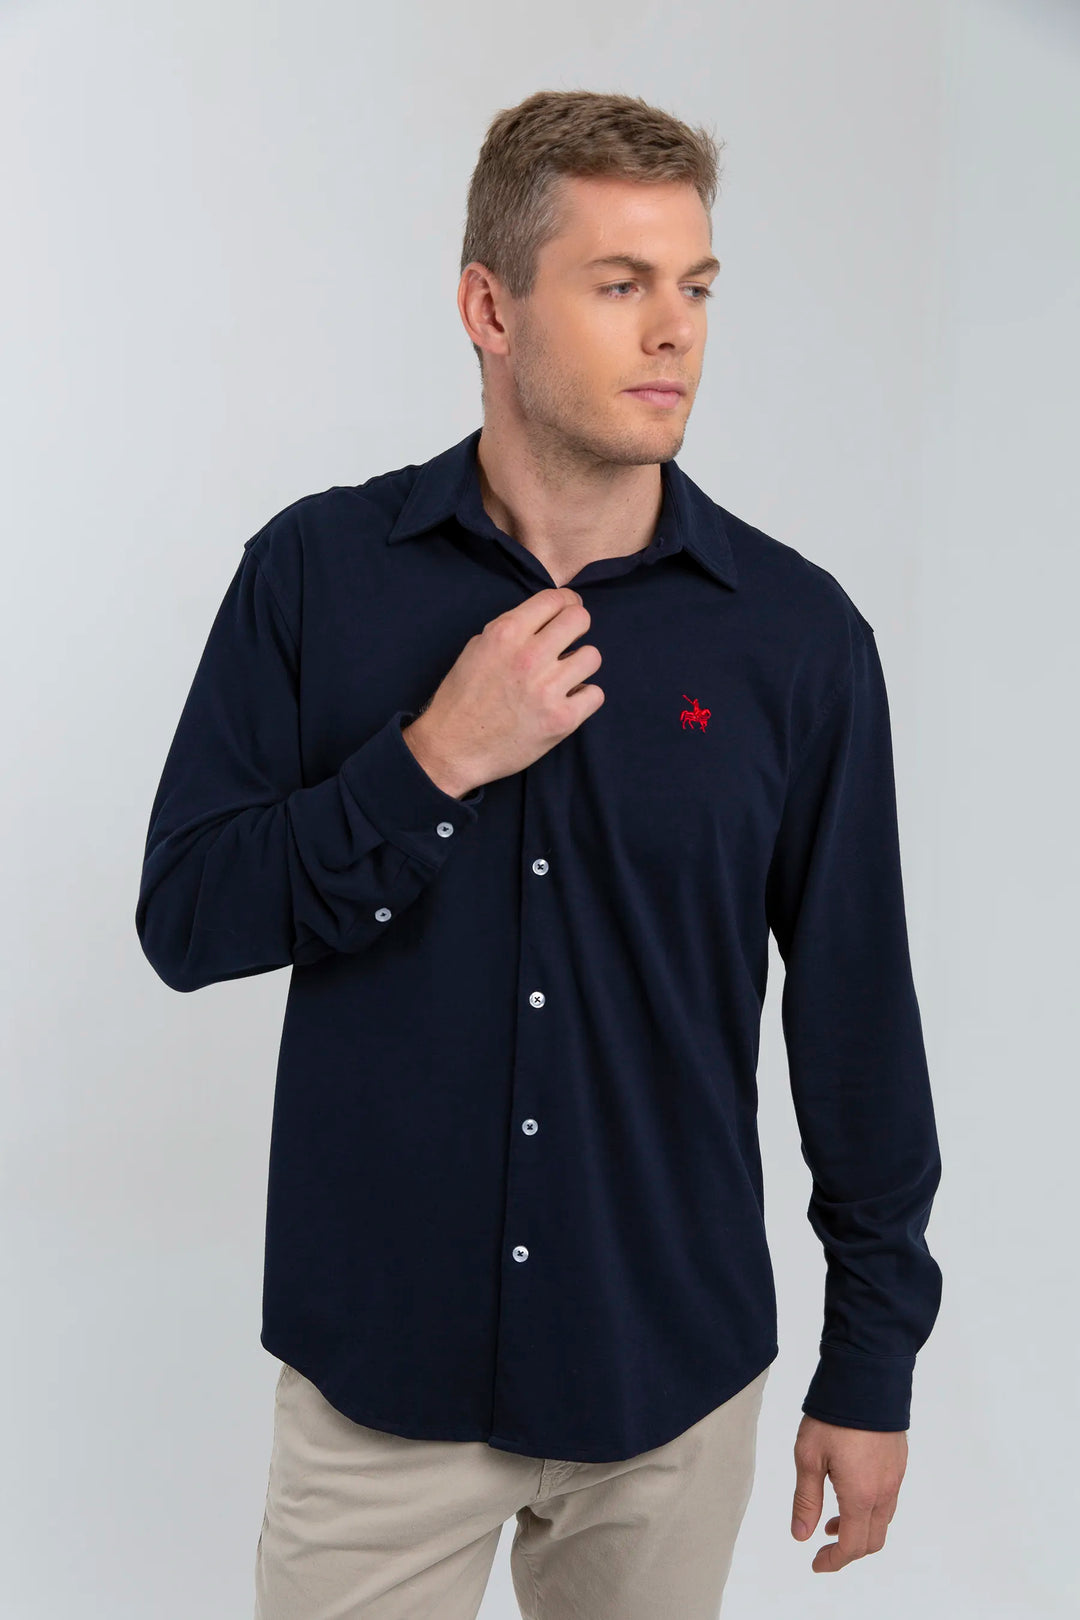 Camisa hombre manga larga tejido pique azul oscuro. textura en relieve y suavidad excepcional. Ideal para looks casuales informales.